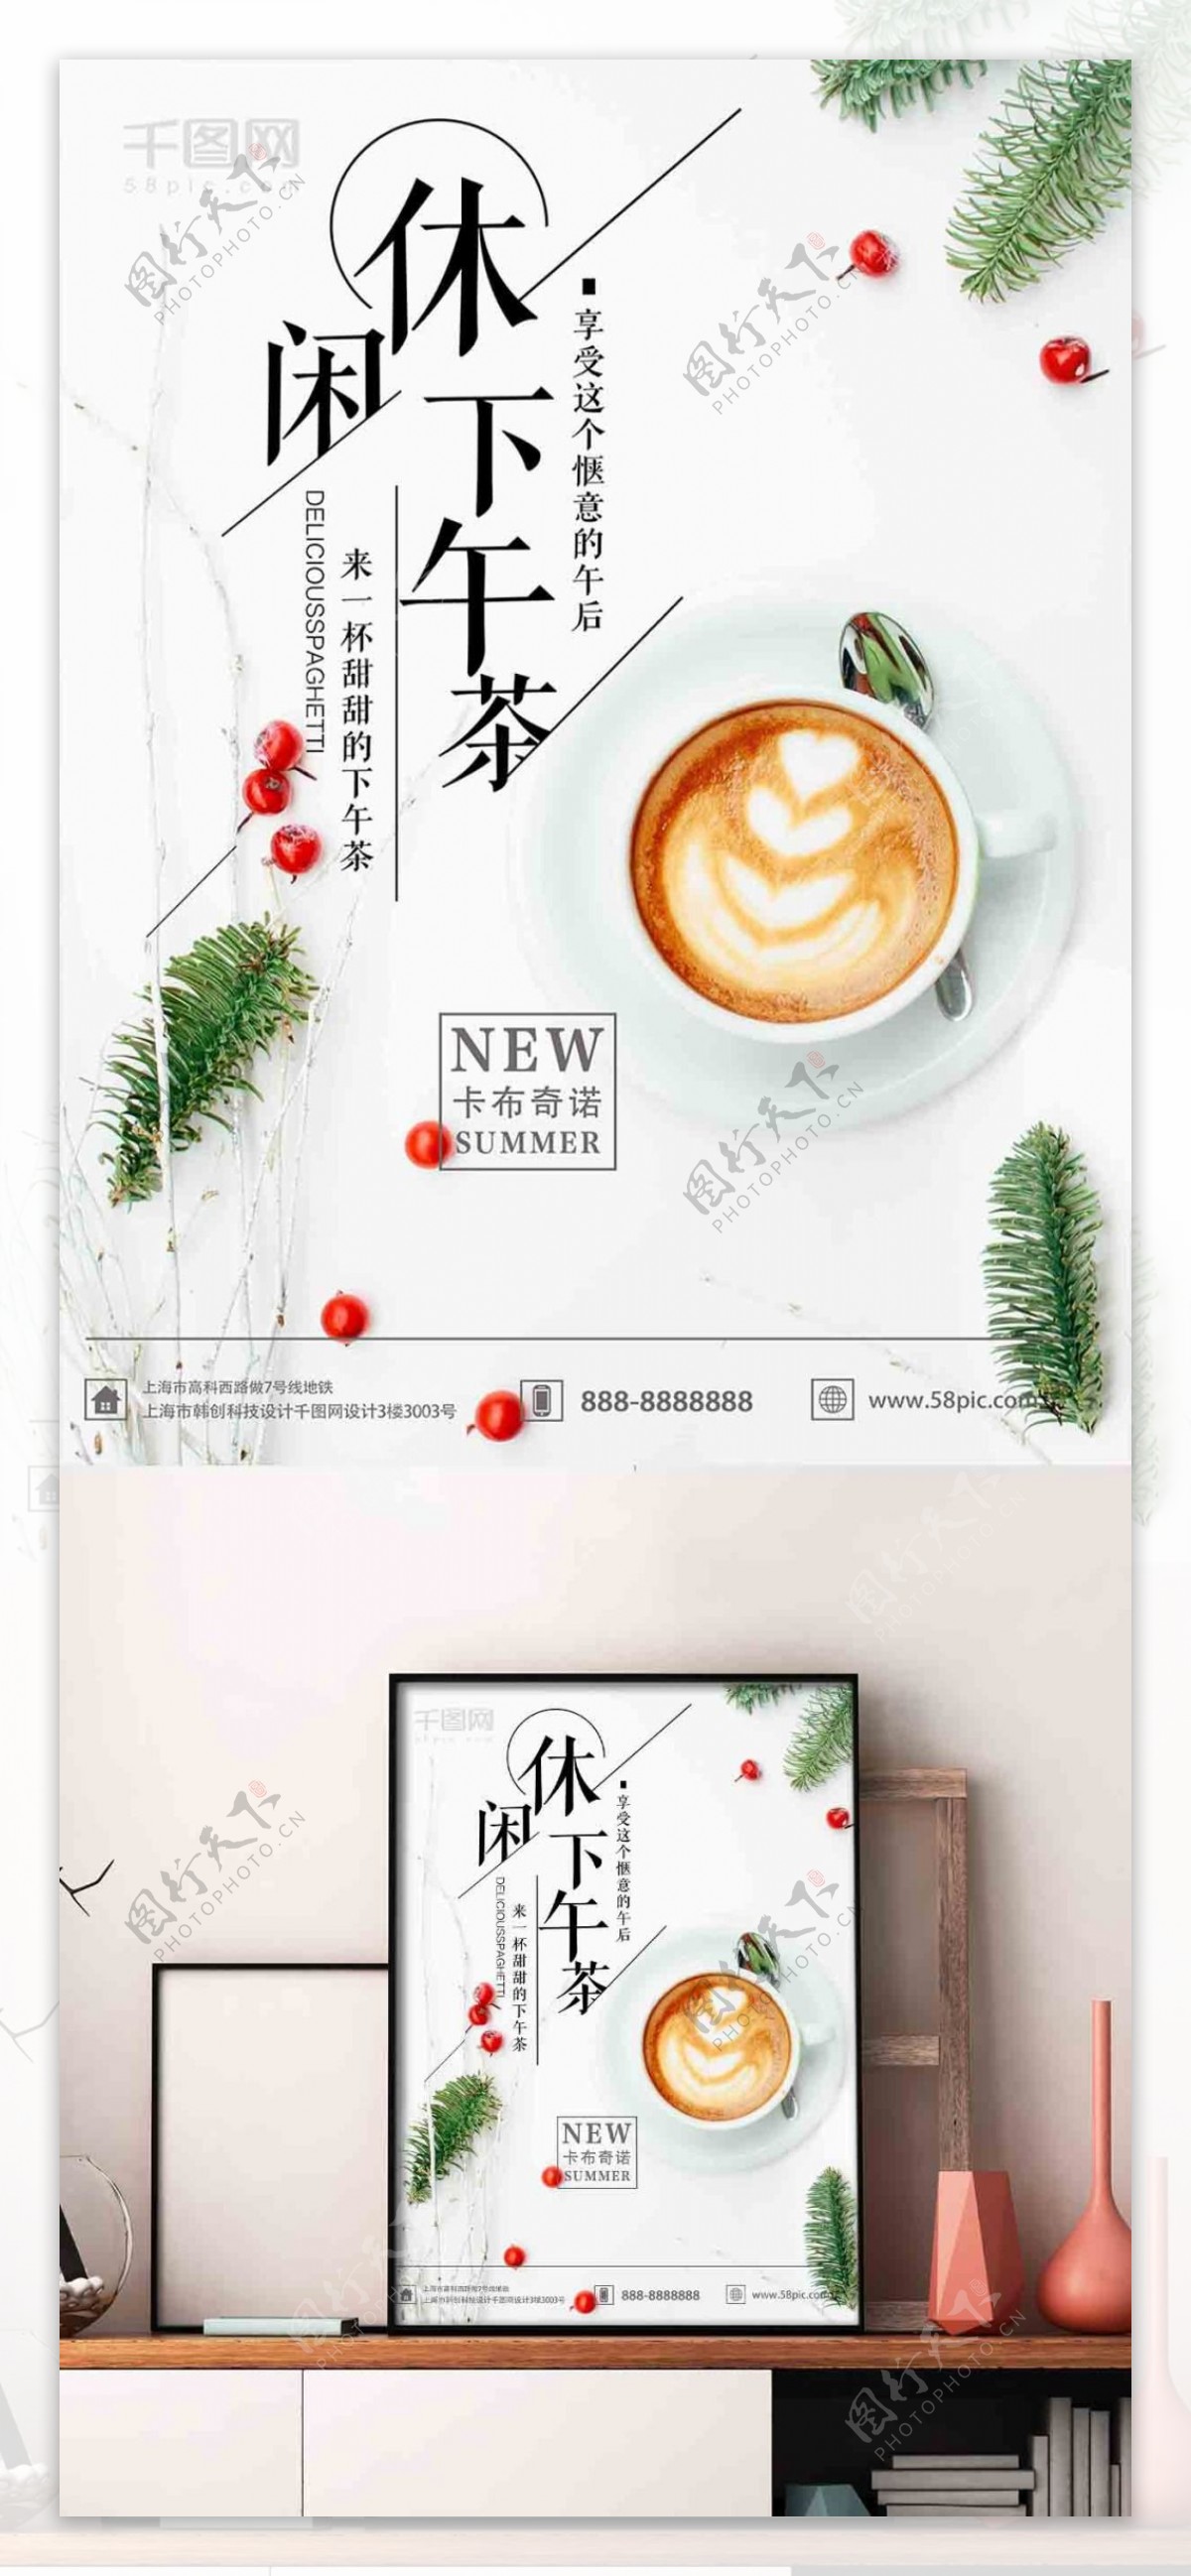 咖啡悠闲下午茶清新文艺海报